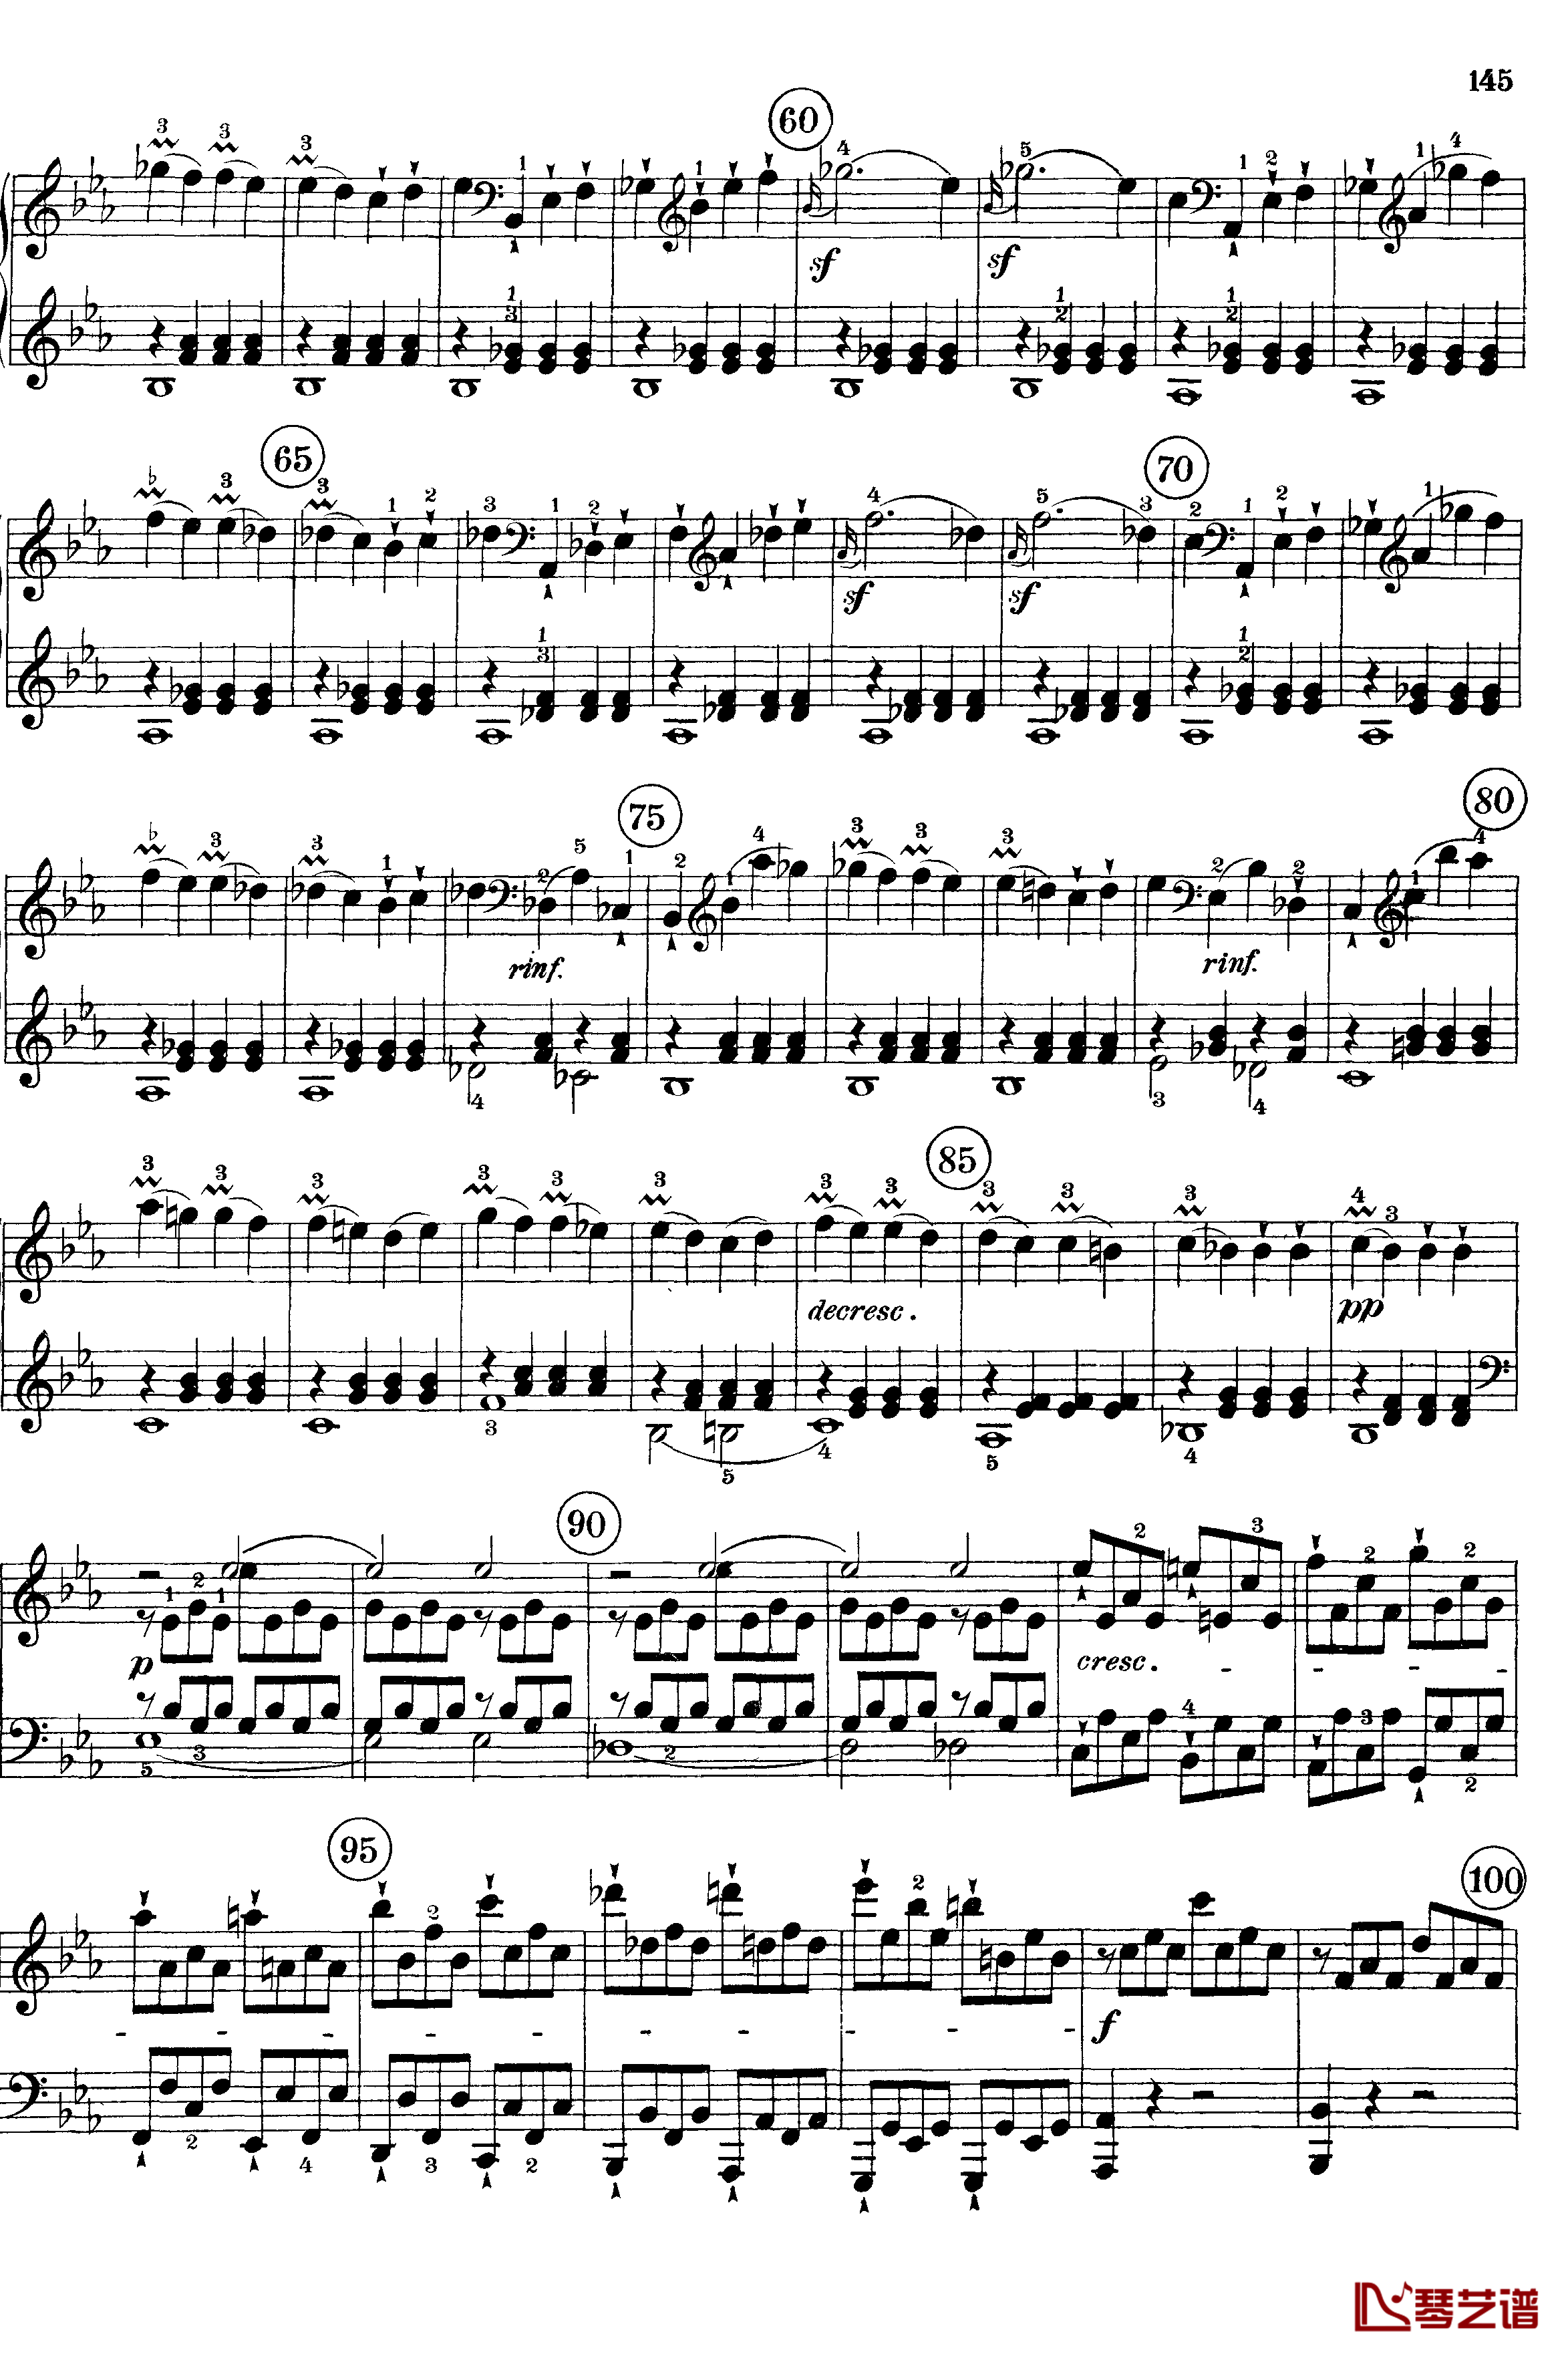 悲怆钢琴谱-c小调第八号钢琴奏鸣曲-全乐章-带指法版-贝多芬-beethoven3